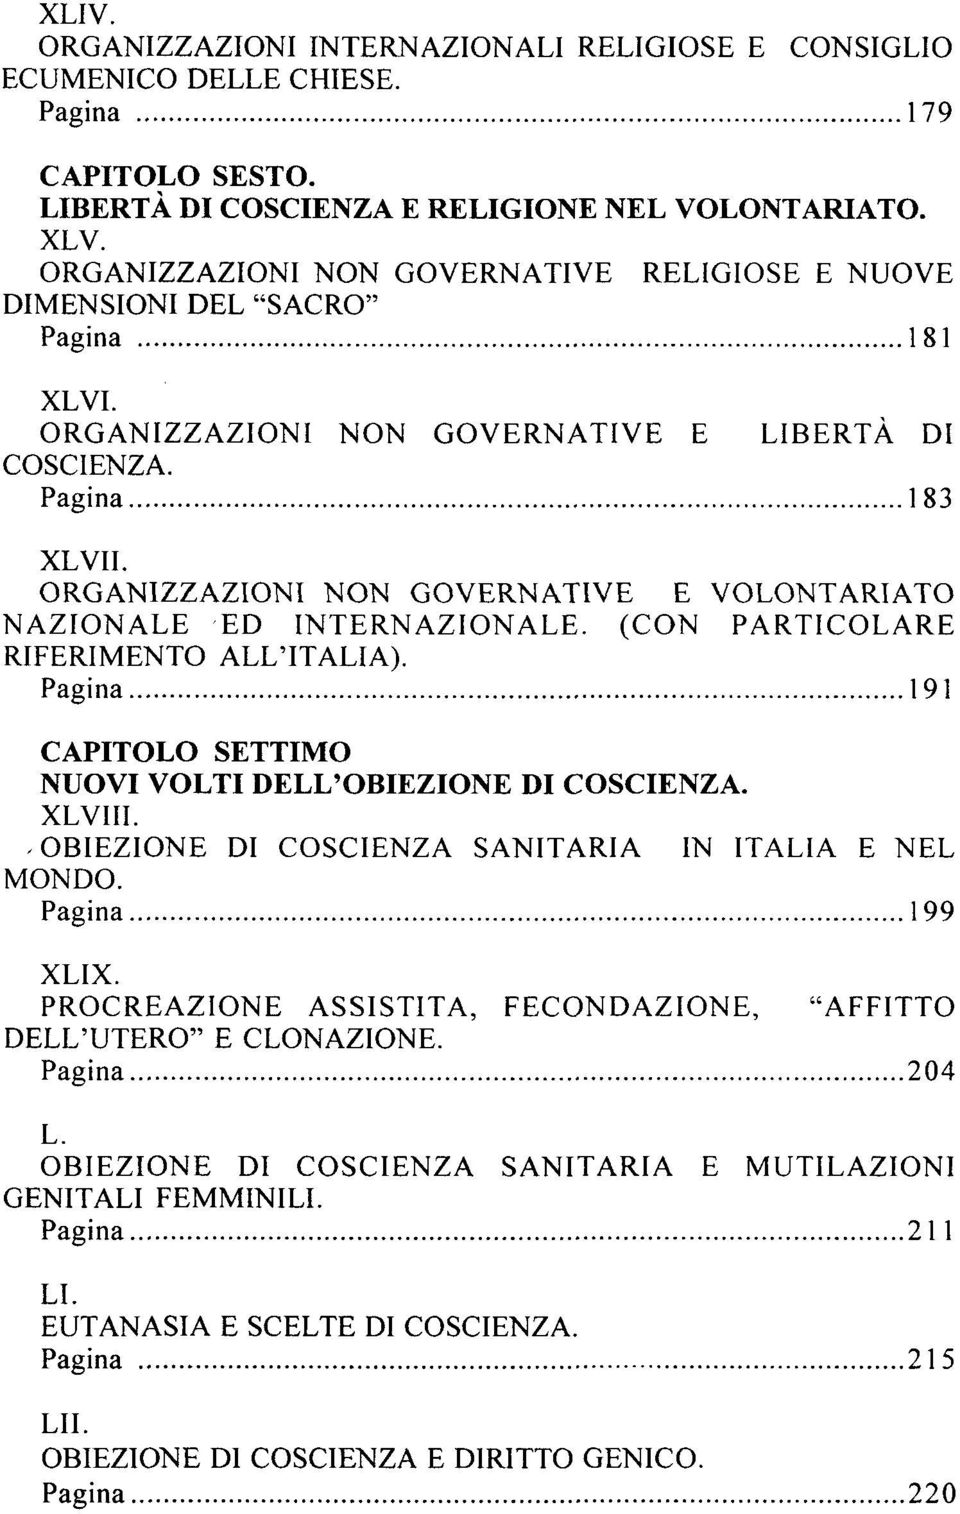 ORGANIZZAZIONI NON GOVERNATIVE E VOLONTARIATO NAZIONALE ED INTERNAZIONALE. (CON PARTICOLARE RIFERIMENTO ALL'ITALIA). Pagina 191 CAPITOLO SETTIMO NUOVI VOLTI DELL'OBIEZIONE DI COSCIENZA. XLVIII.